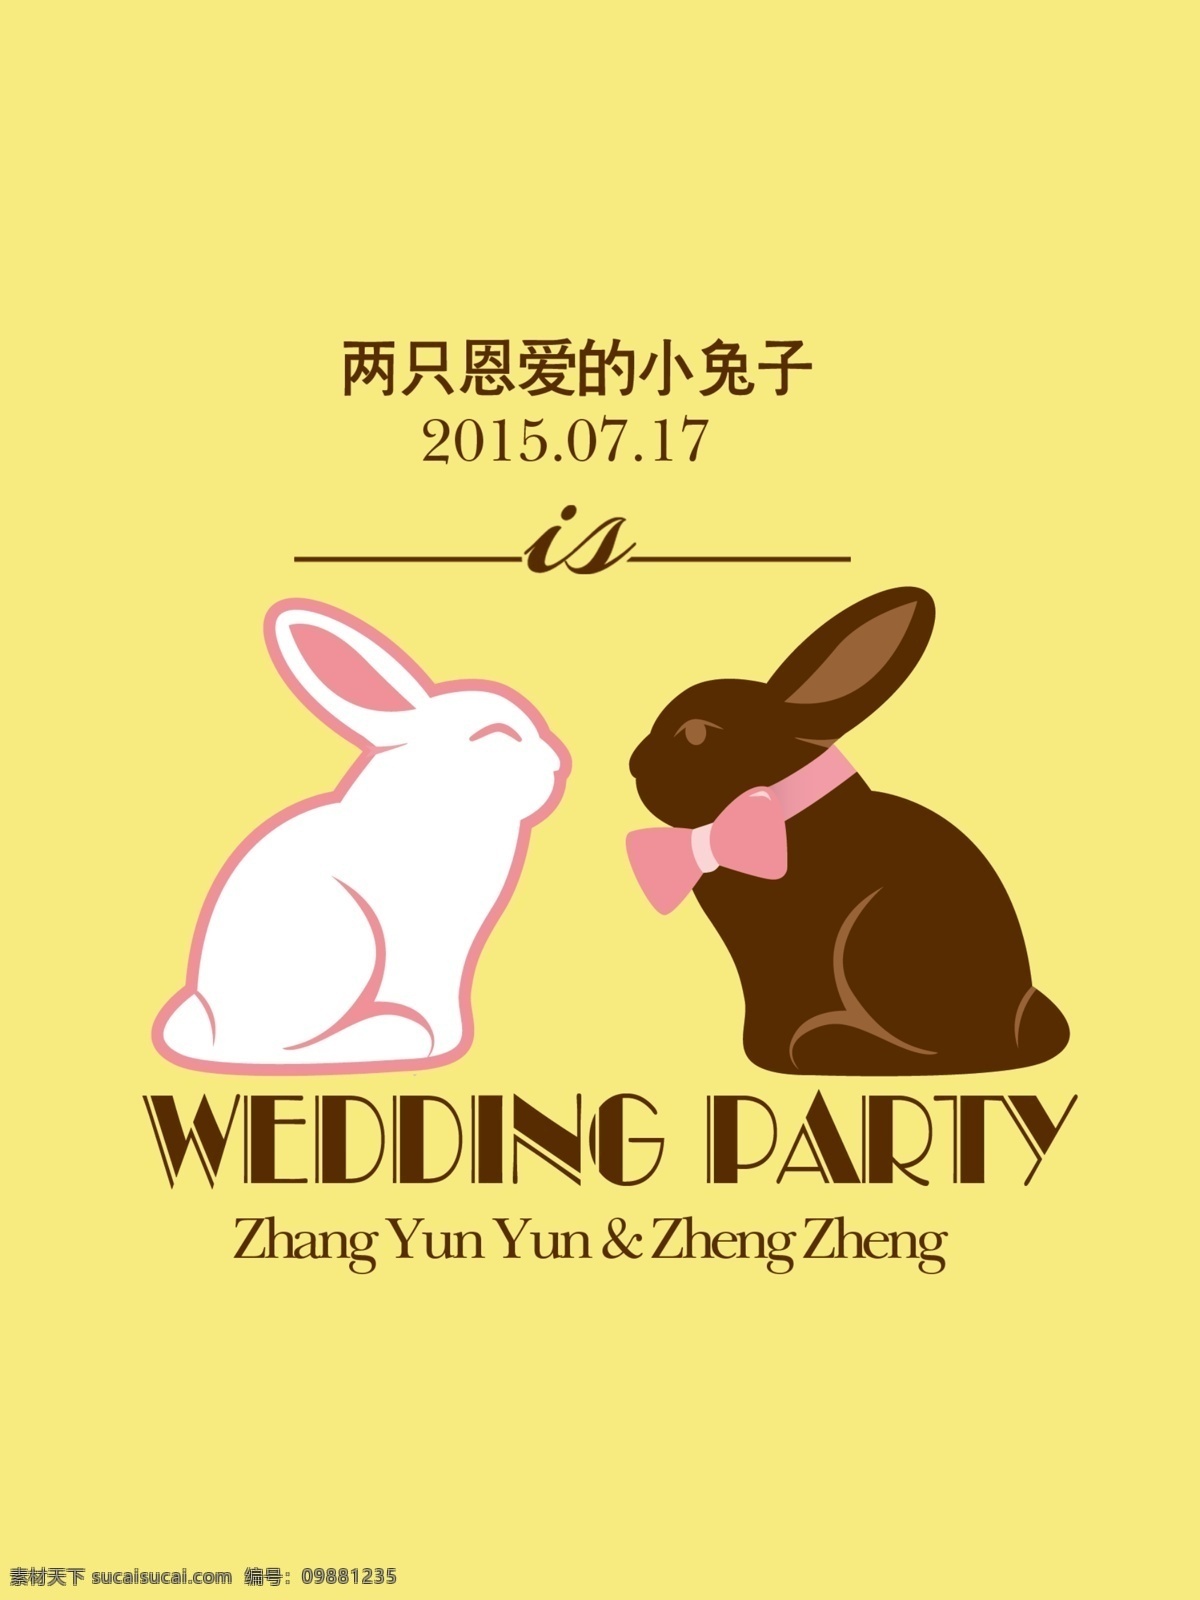 两只兔子 黑白兔子 婚礼水牌 婚礼指示牌 婚礼指引牌 分层